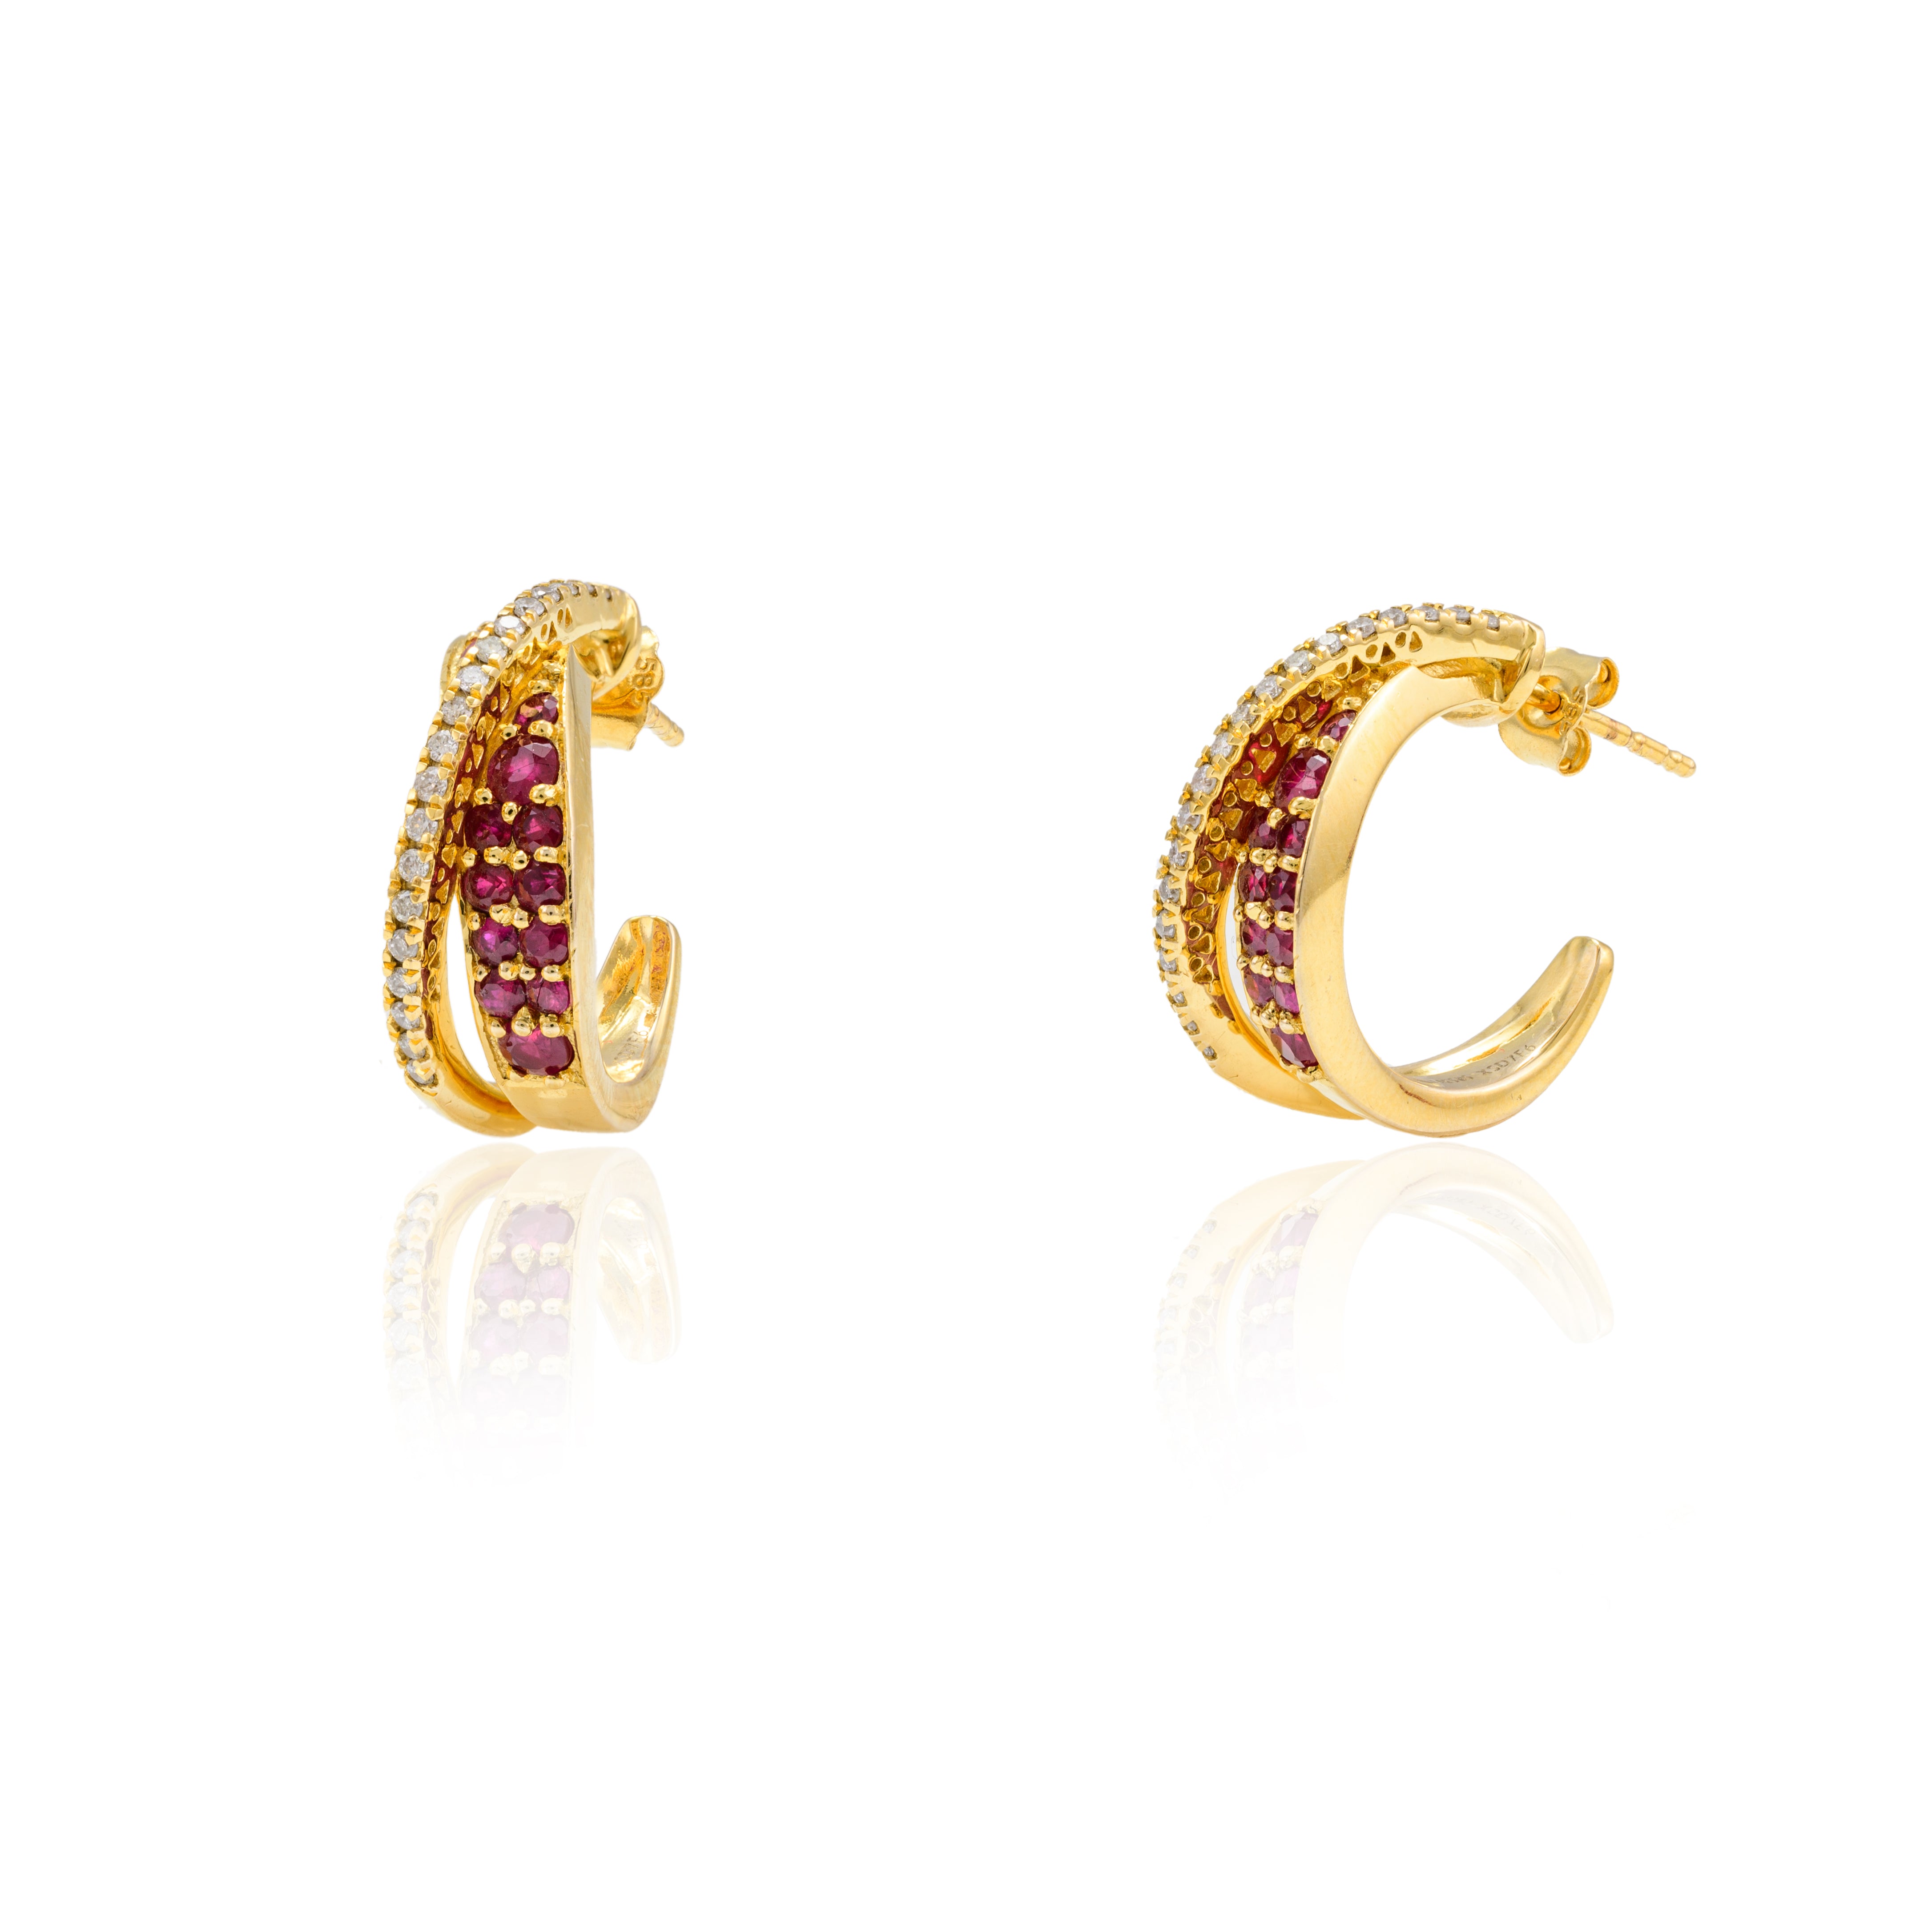 14K Yellow Gold Ruby Diamond Hoops Earrings